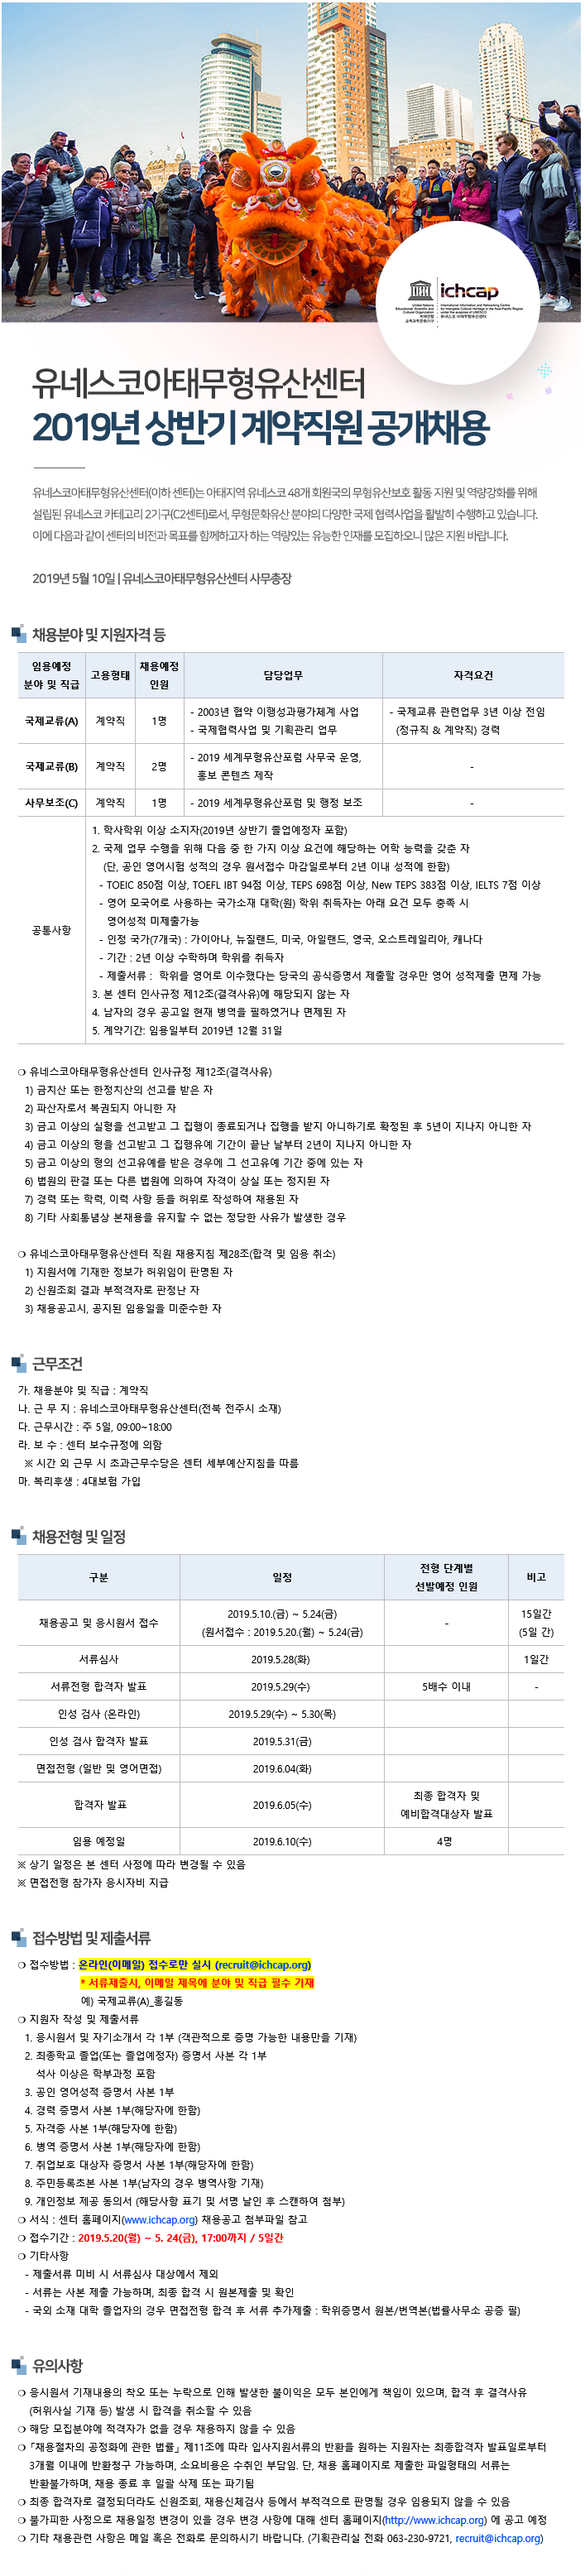 2019 유네스코아태무형유산센터 계약직 채용 ~5/24